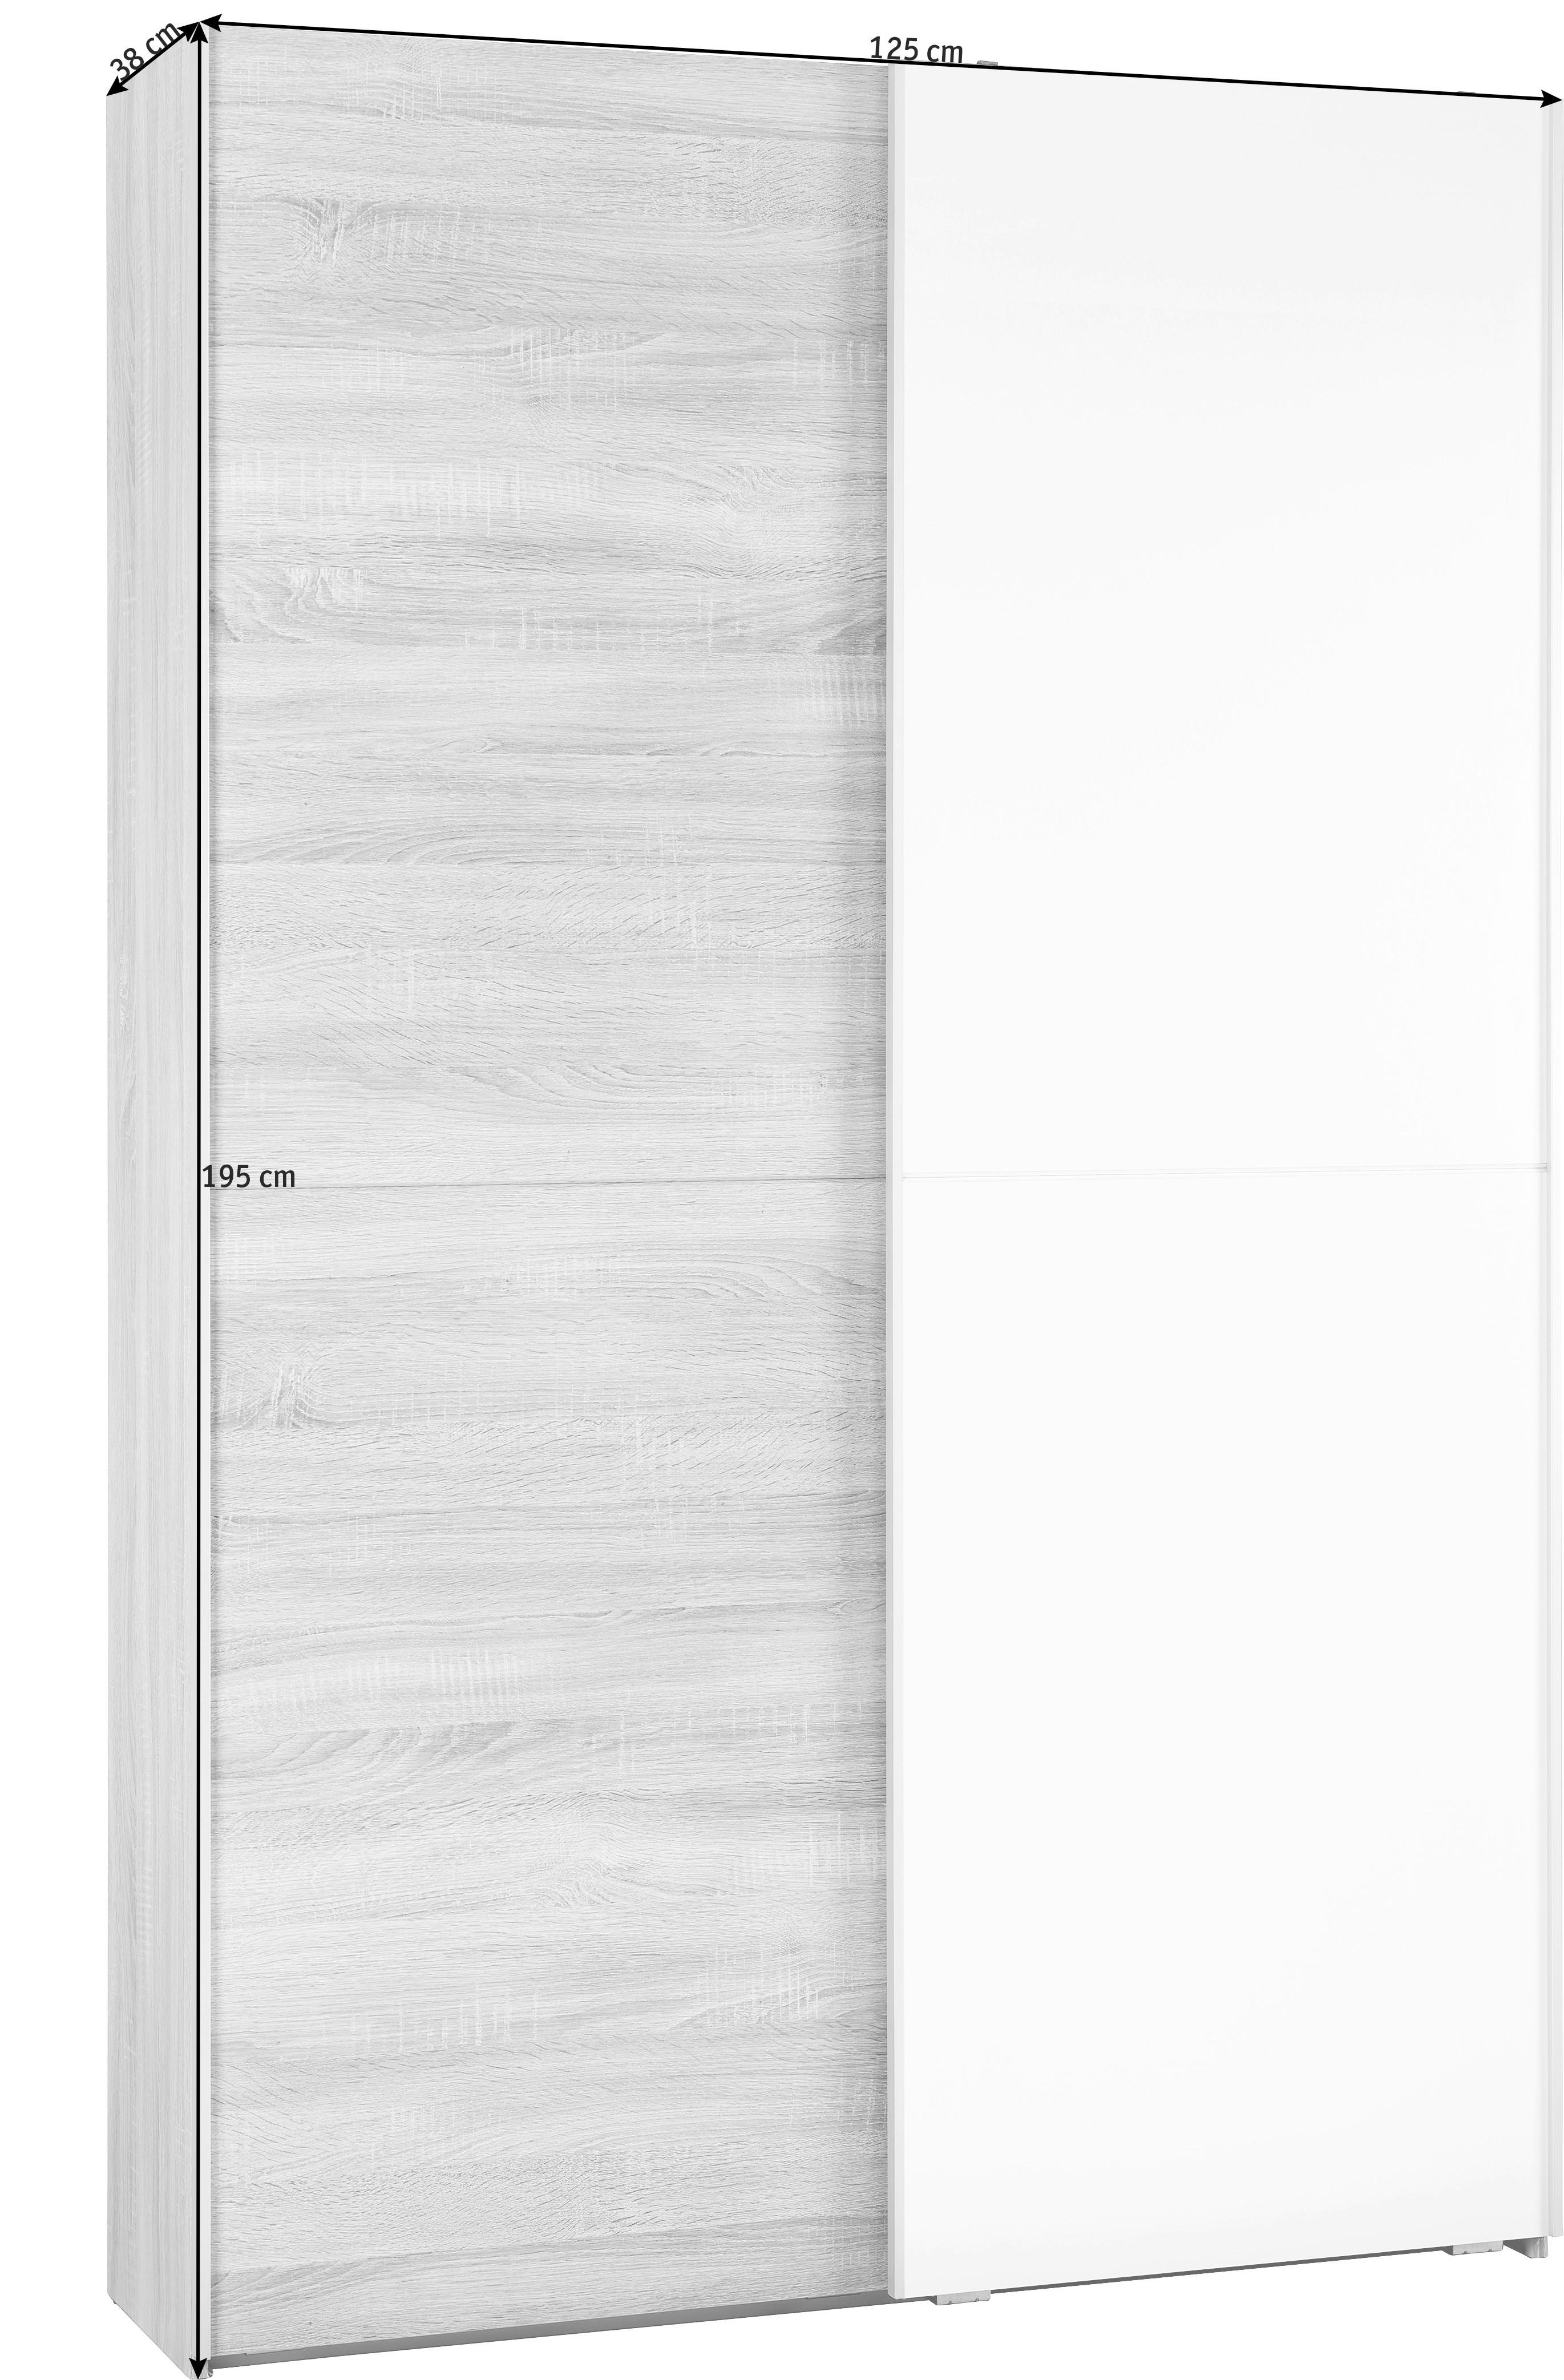 VIACÚČELOVÁ SKRIŇA, biela, dub sonoma, 125/195/38 cm - biela/dub sonoma, Konventionell, kompozitné drevo (125/195/38cm)